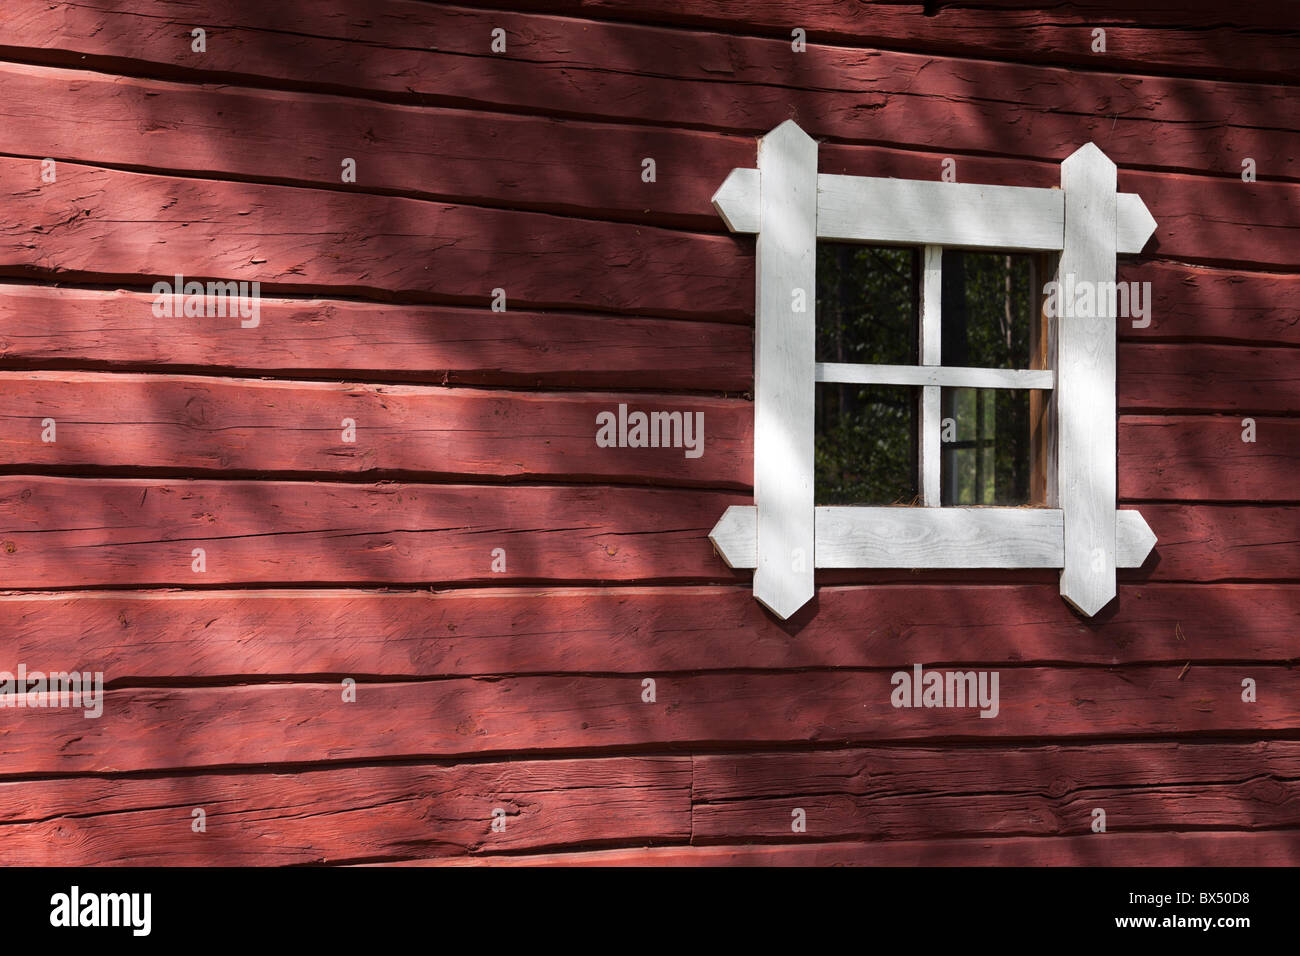 Vieux mur de la cabine en bois peint en ocre rouge et une petite fenêtre, Finlande Banque D'Images